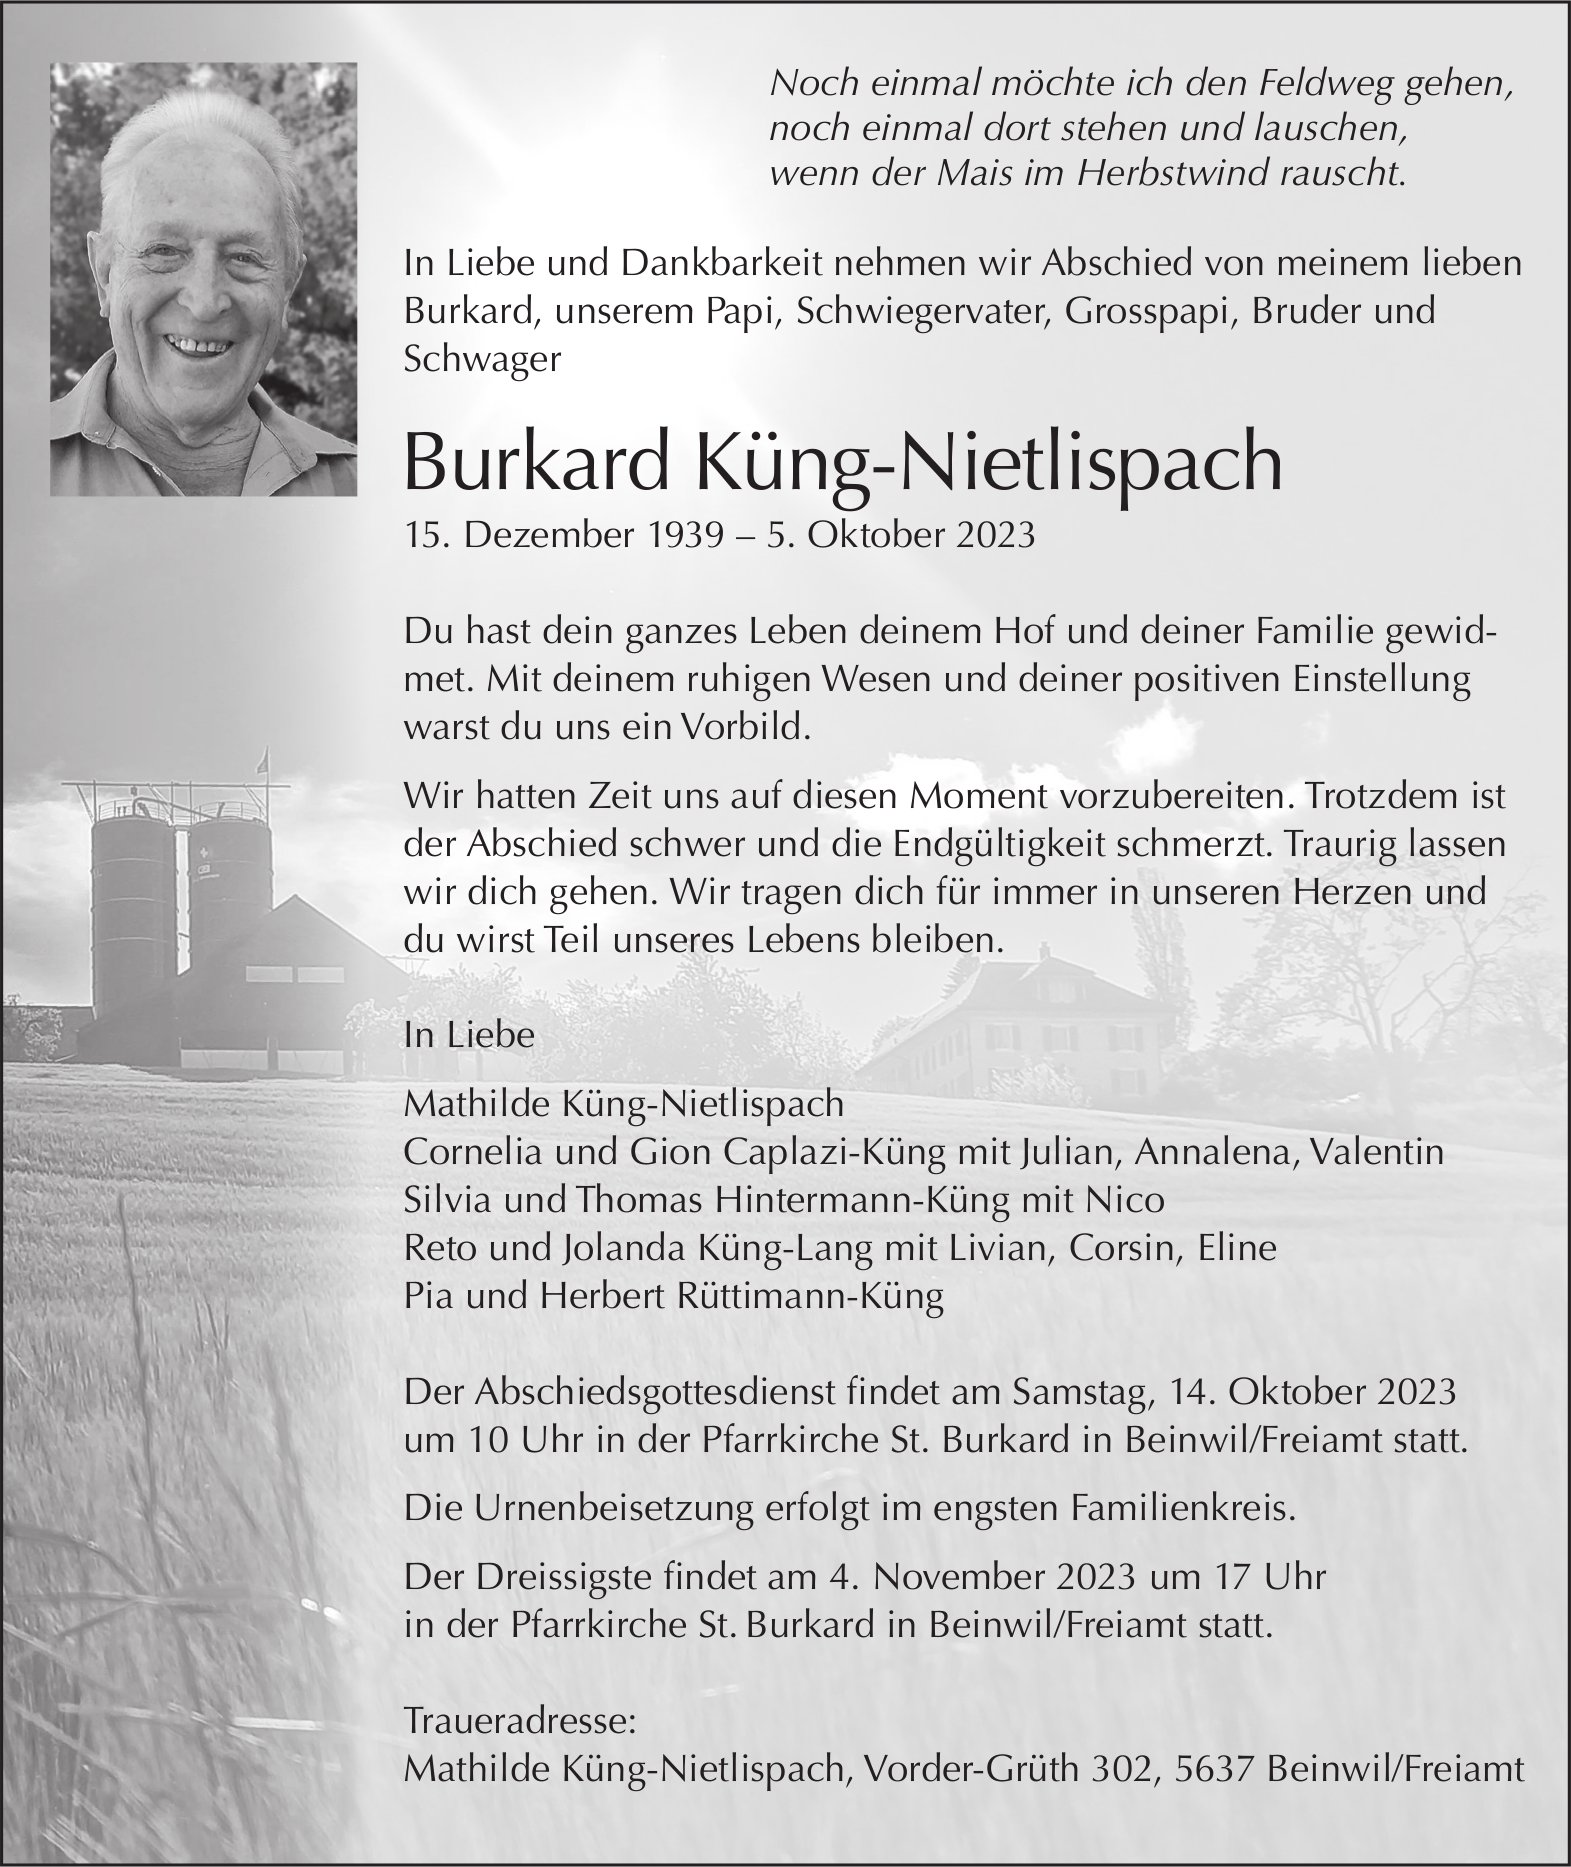 Burkard Küng-Nietlispach, Oktober 2023 / TA